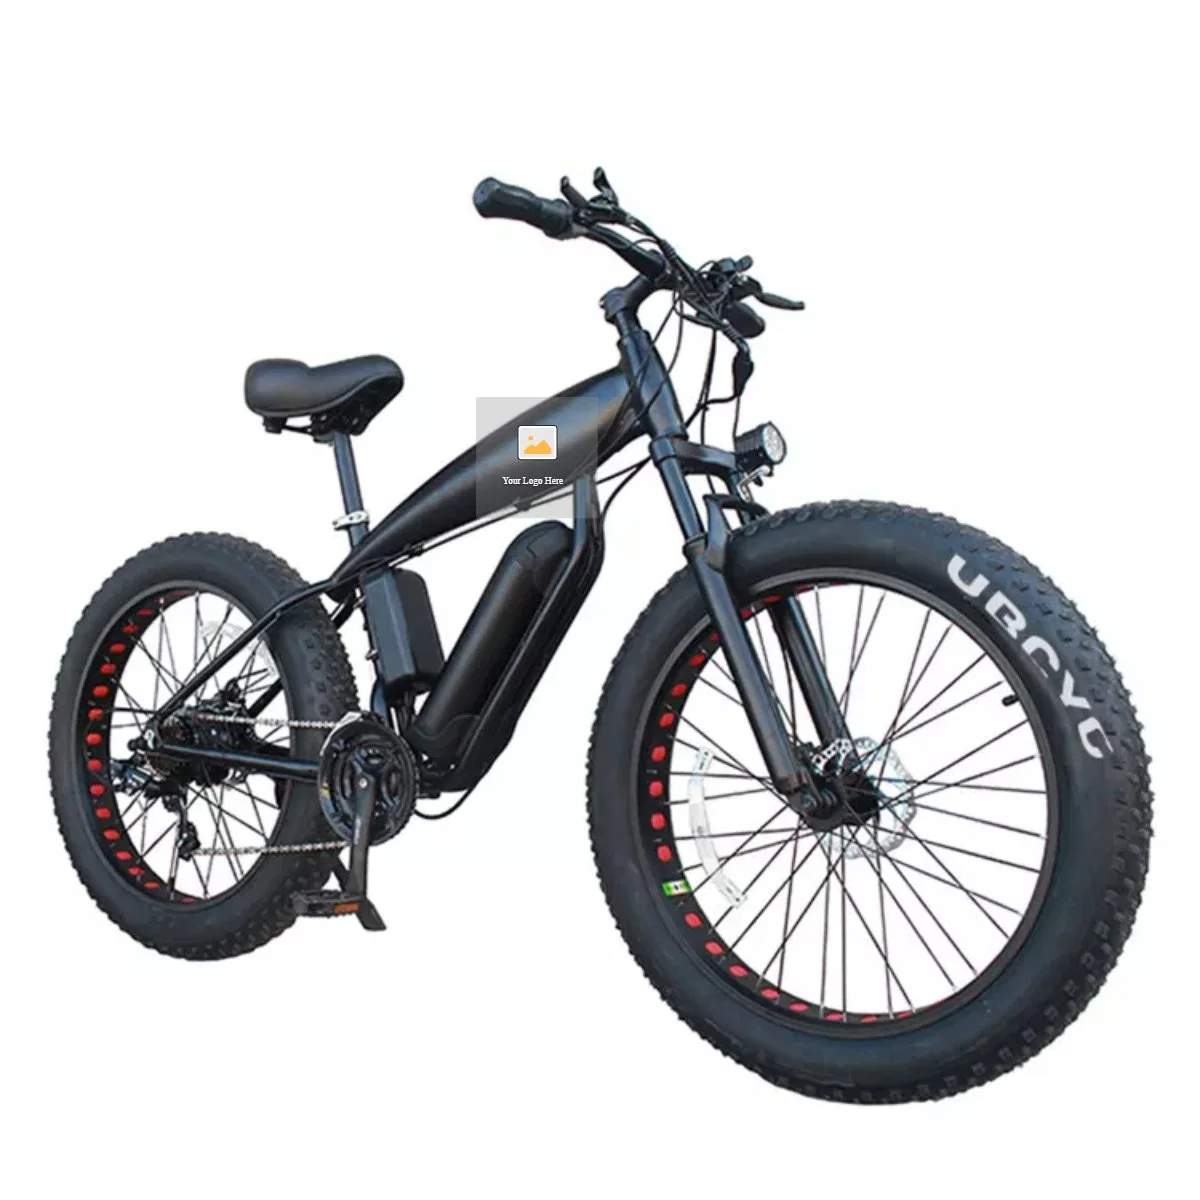 الجملة 2021 الجديدة CE معتمد دراجة كهربائية الجبل الدراجة 500W دراجة E 27.5/29 بوصة E-Bike بنظام تعليق كامل MTB بالدراجة بقدرة 36 فولت/48 فولت للبالغين